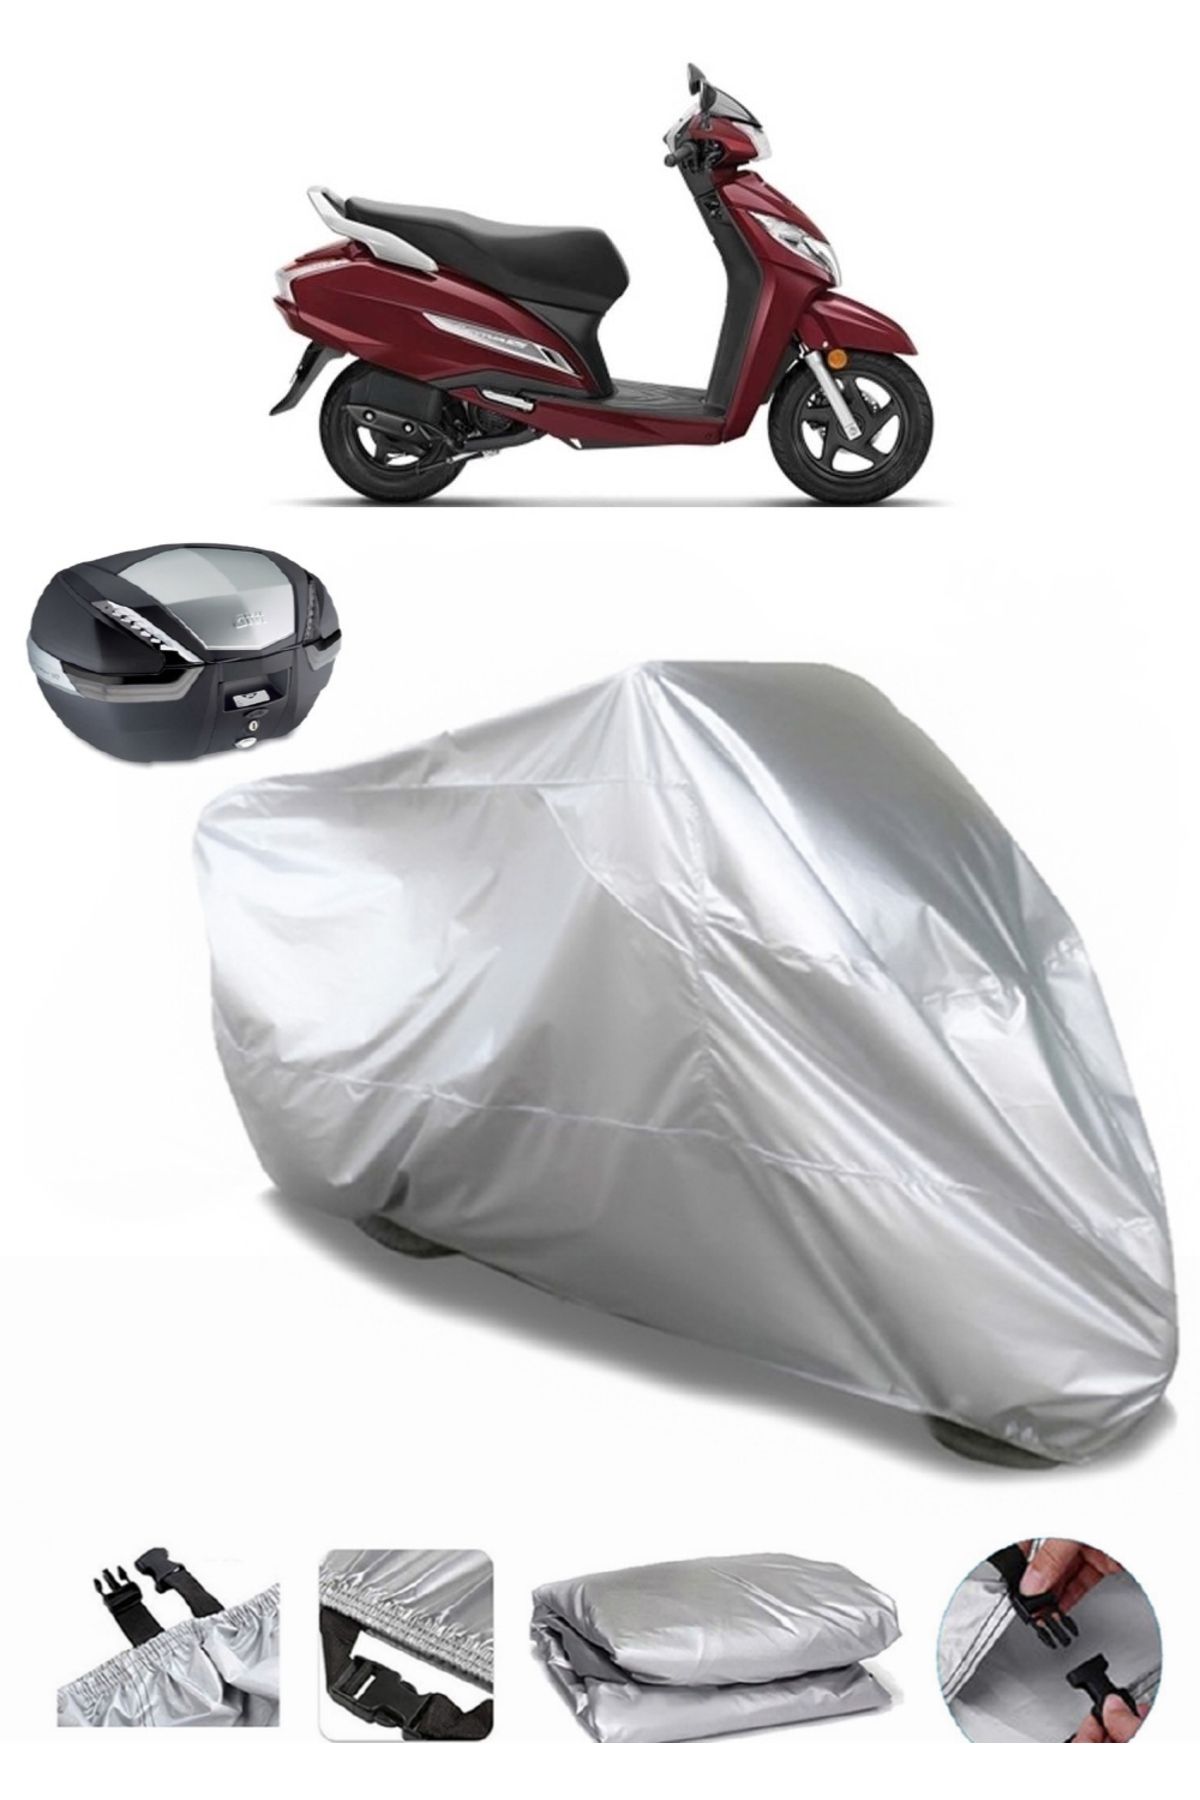 AutoEN Honda Activa 125 Arka Çanta Uyumlu Motosiklet Brandası Lüx Kalite Motor Brandası